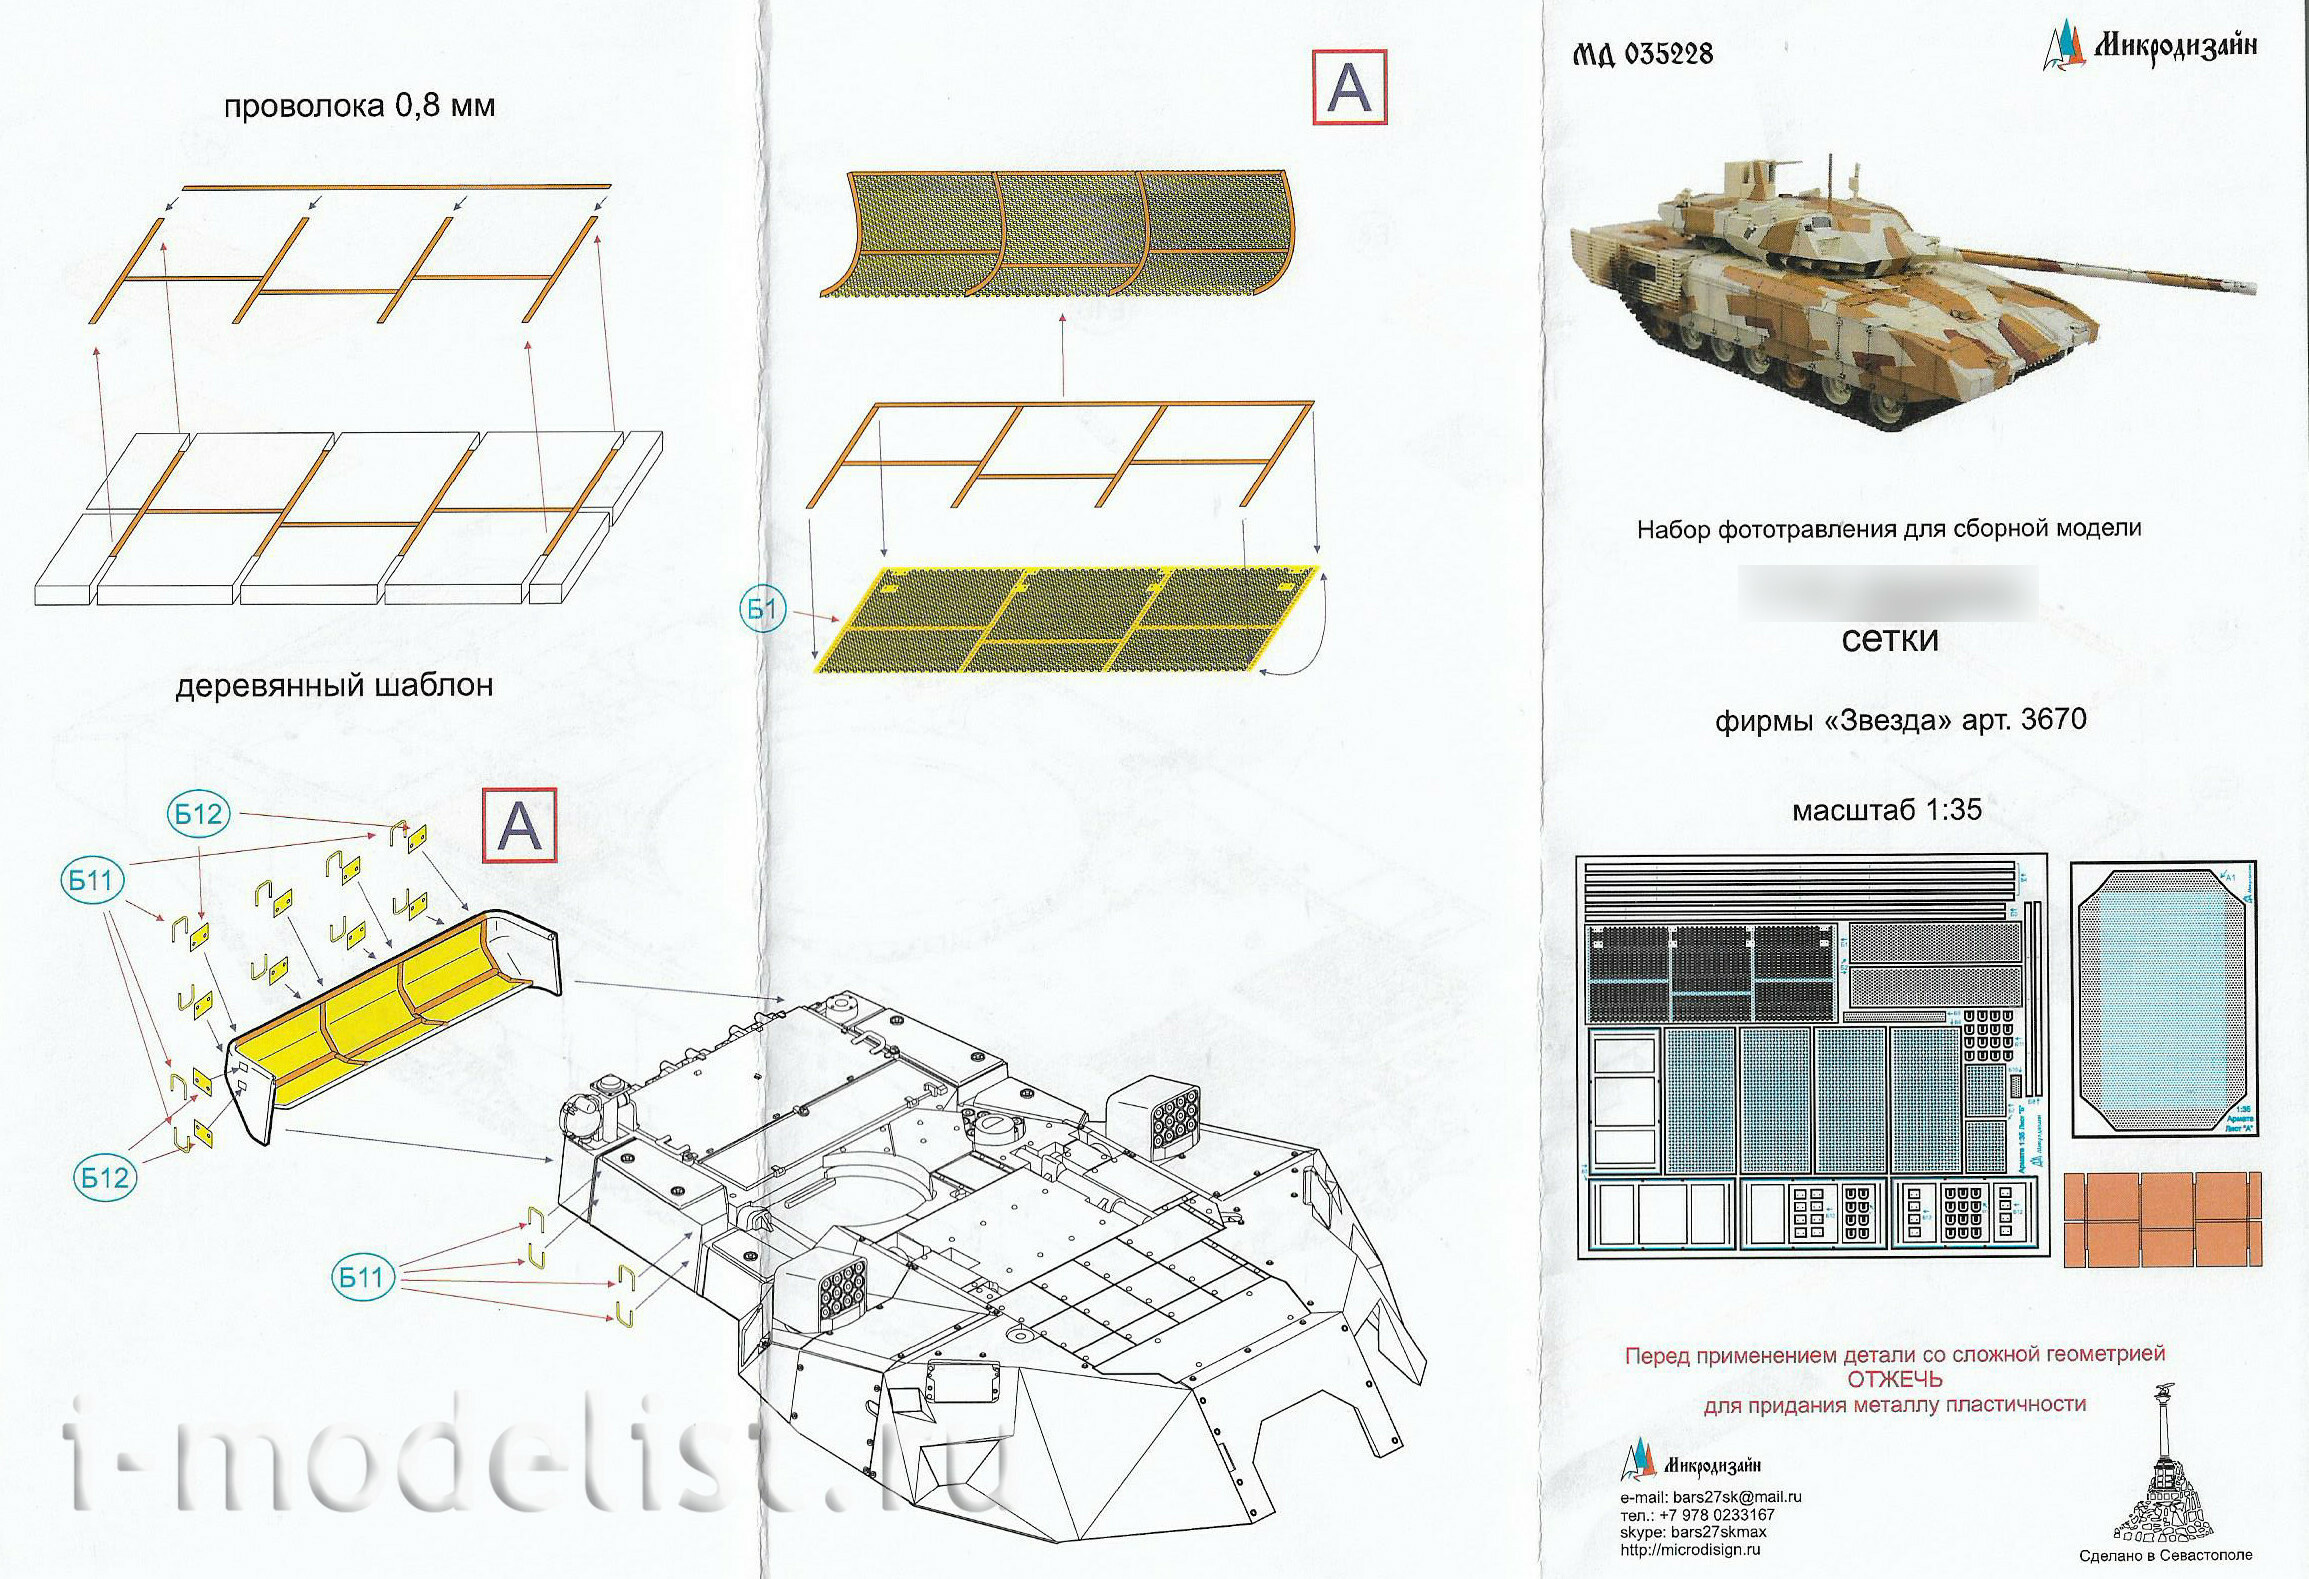 035228 Микродизайн 1/35 Сетки МТО для танка 14 